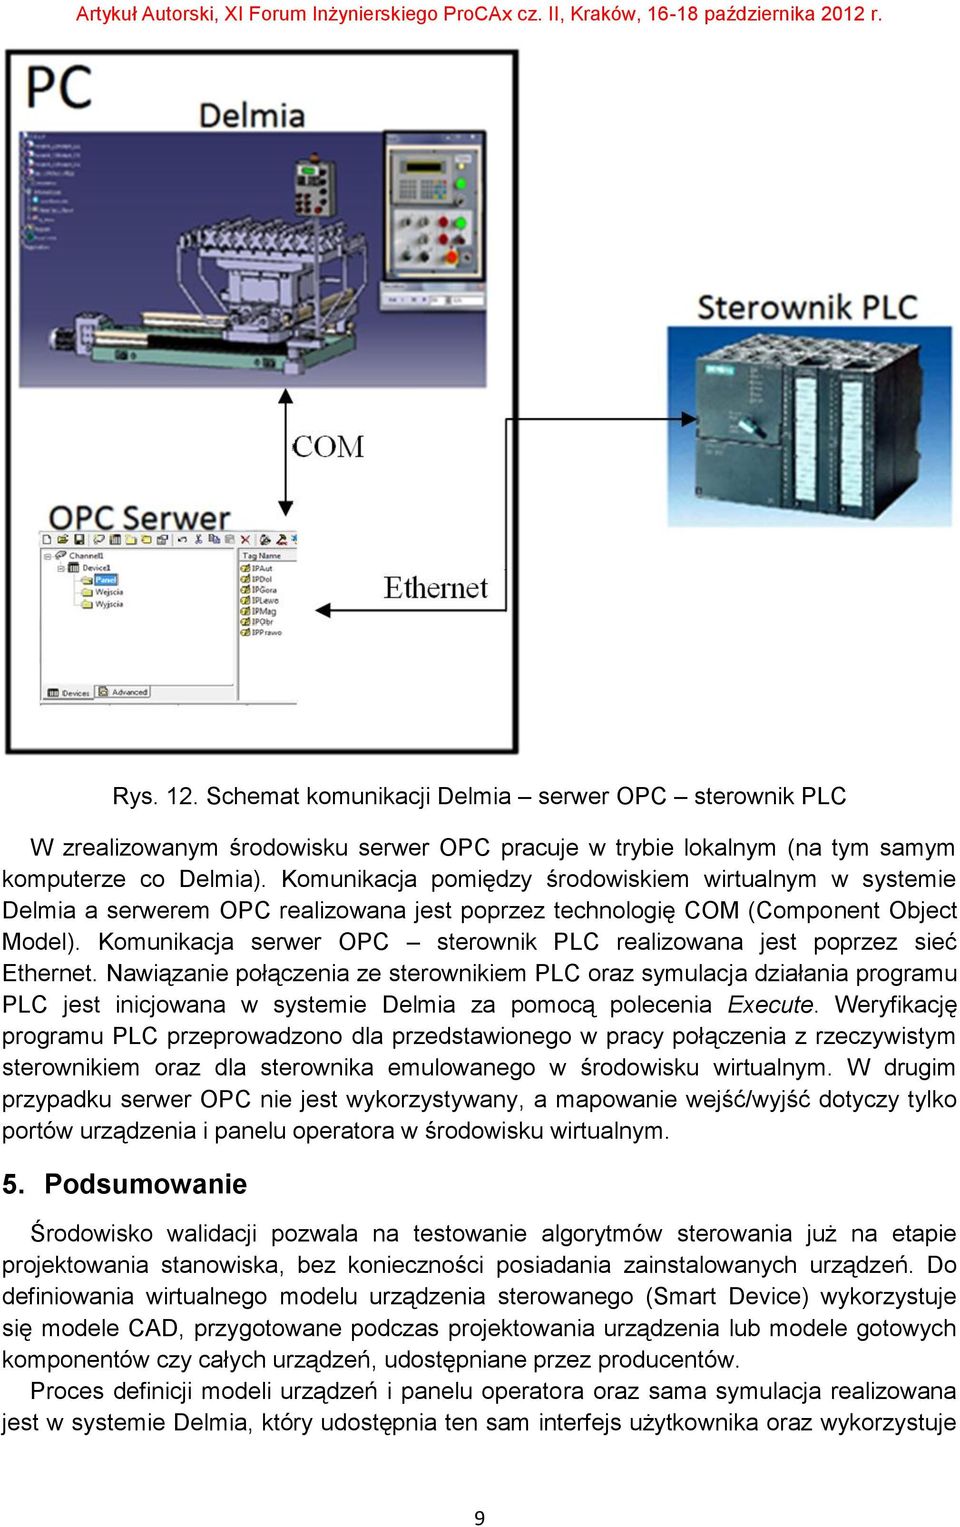 Komunikacja serwer OPC sterownik PLC realizowana jest poprzez sieć Ethernet.